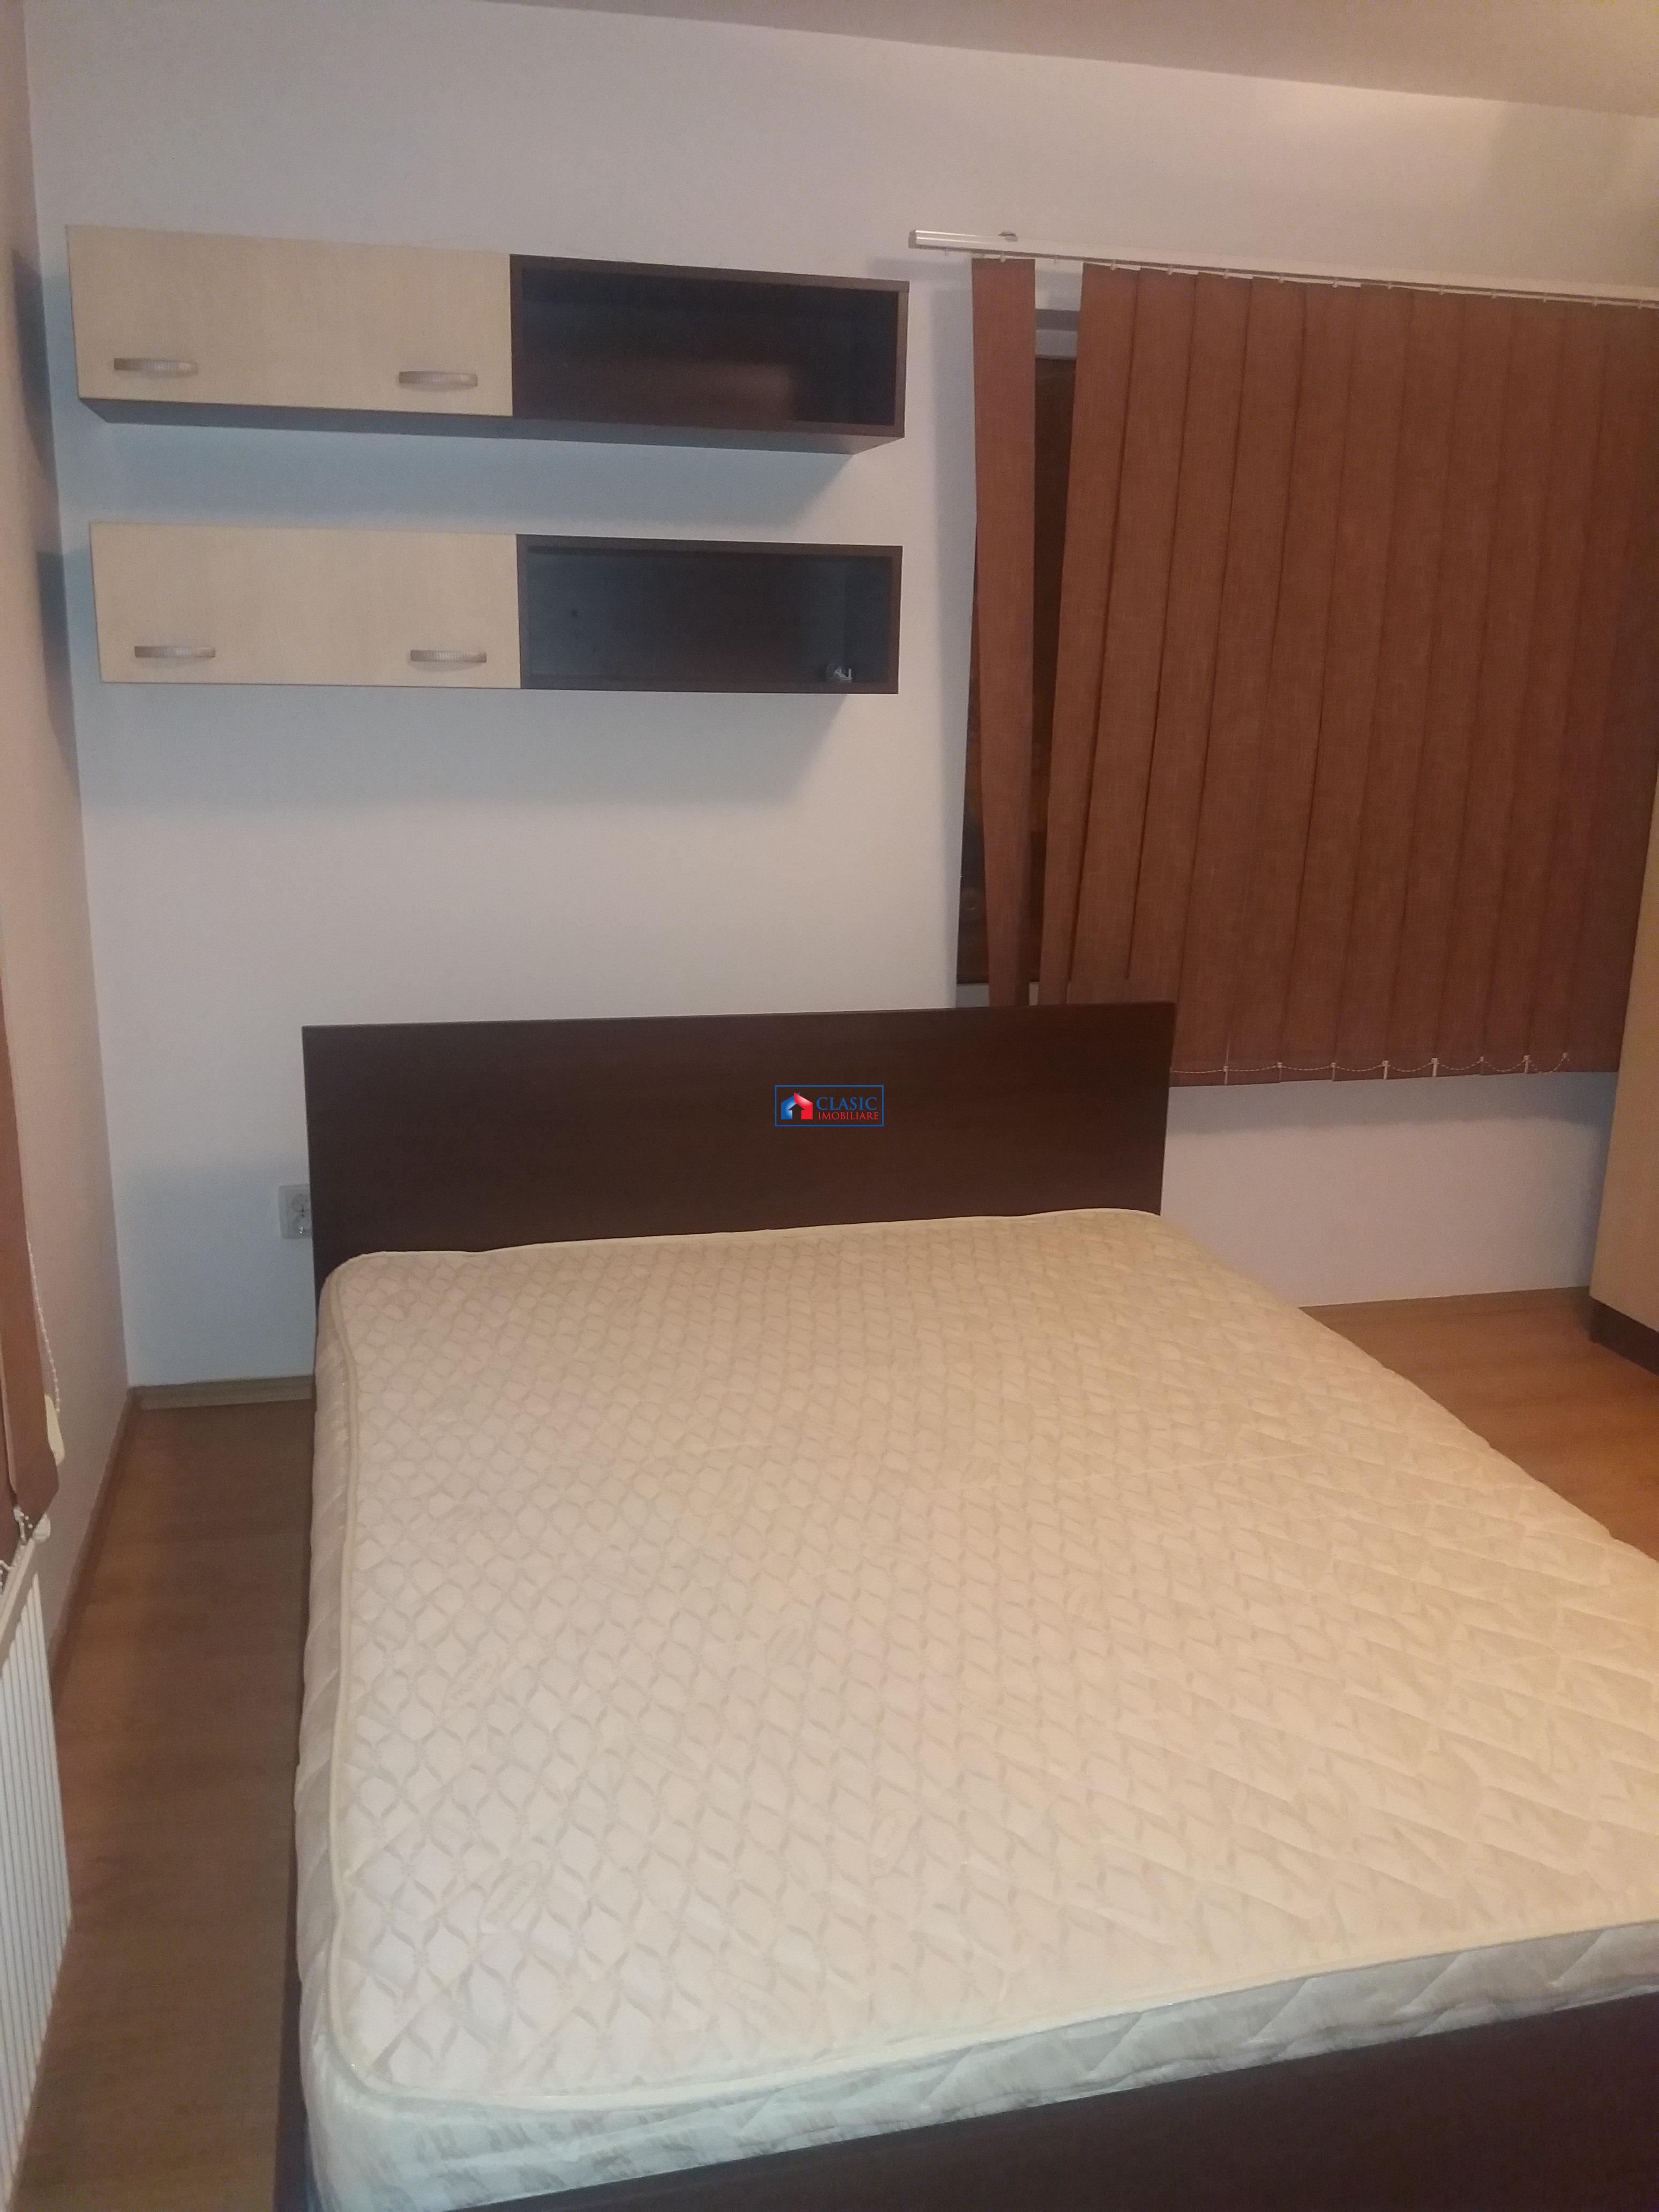 Inchiriere apartament 3 camere modern in bloc nou in Gheorgheni, Cluj Napoca